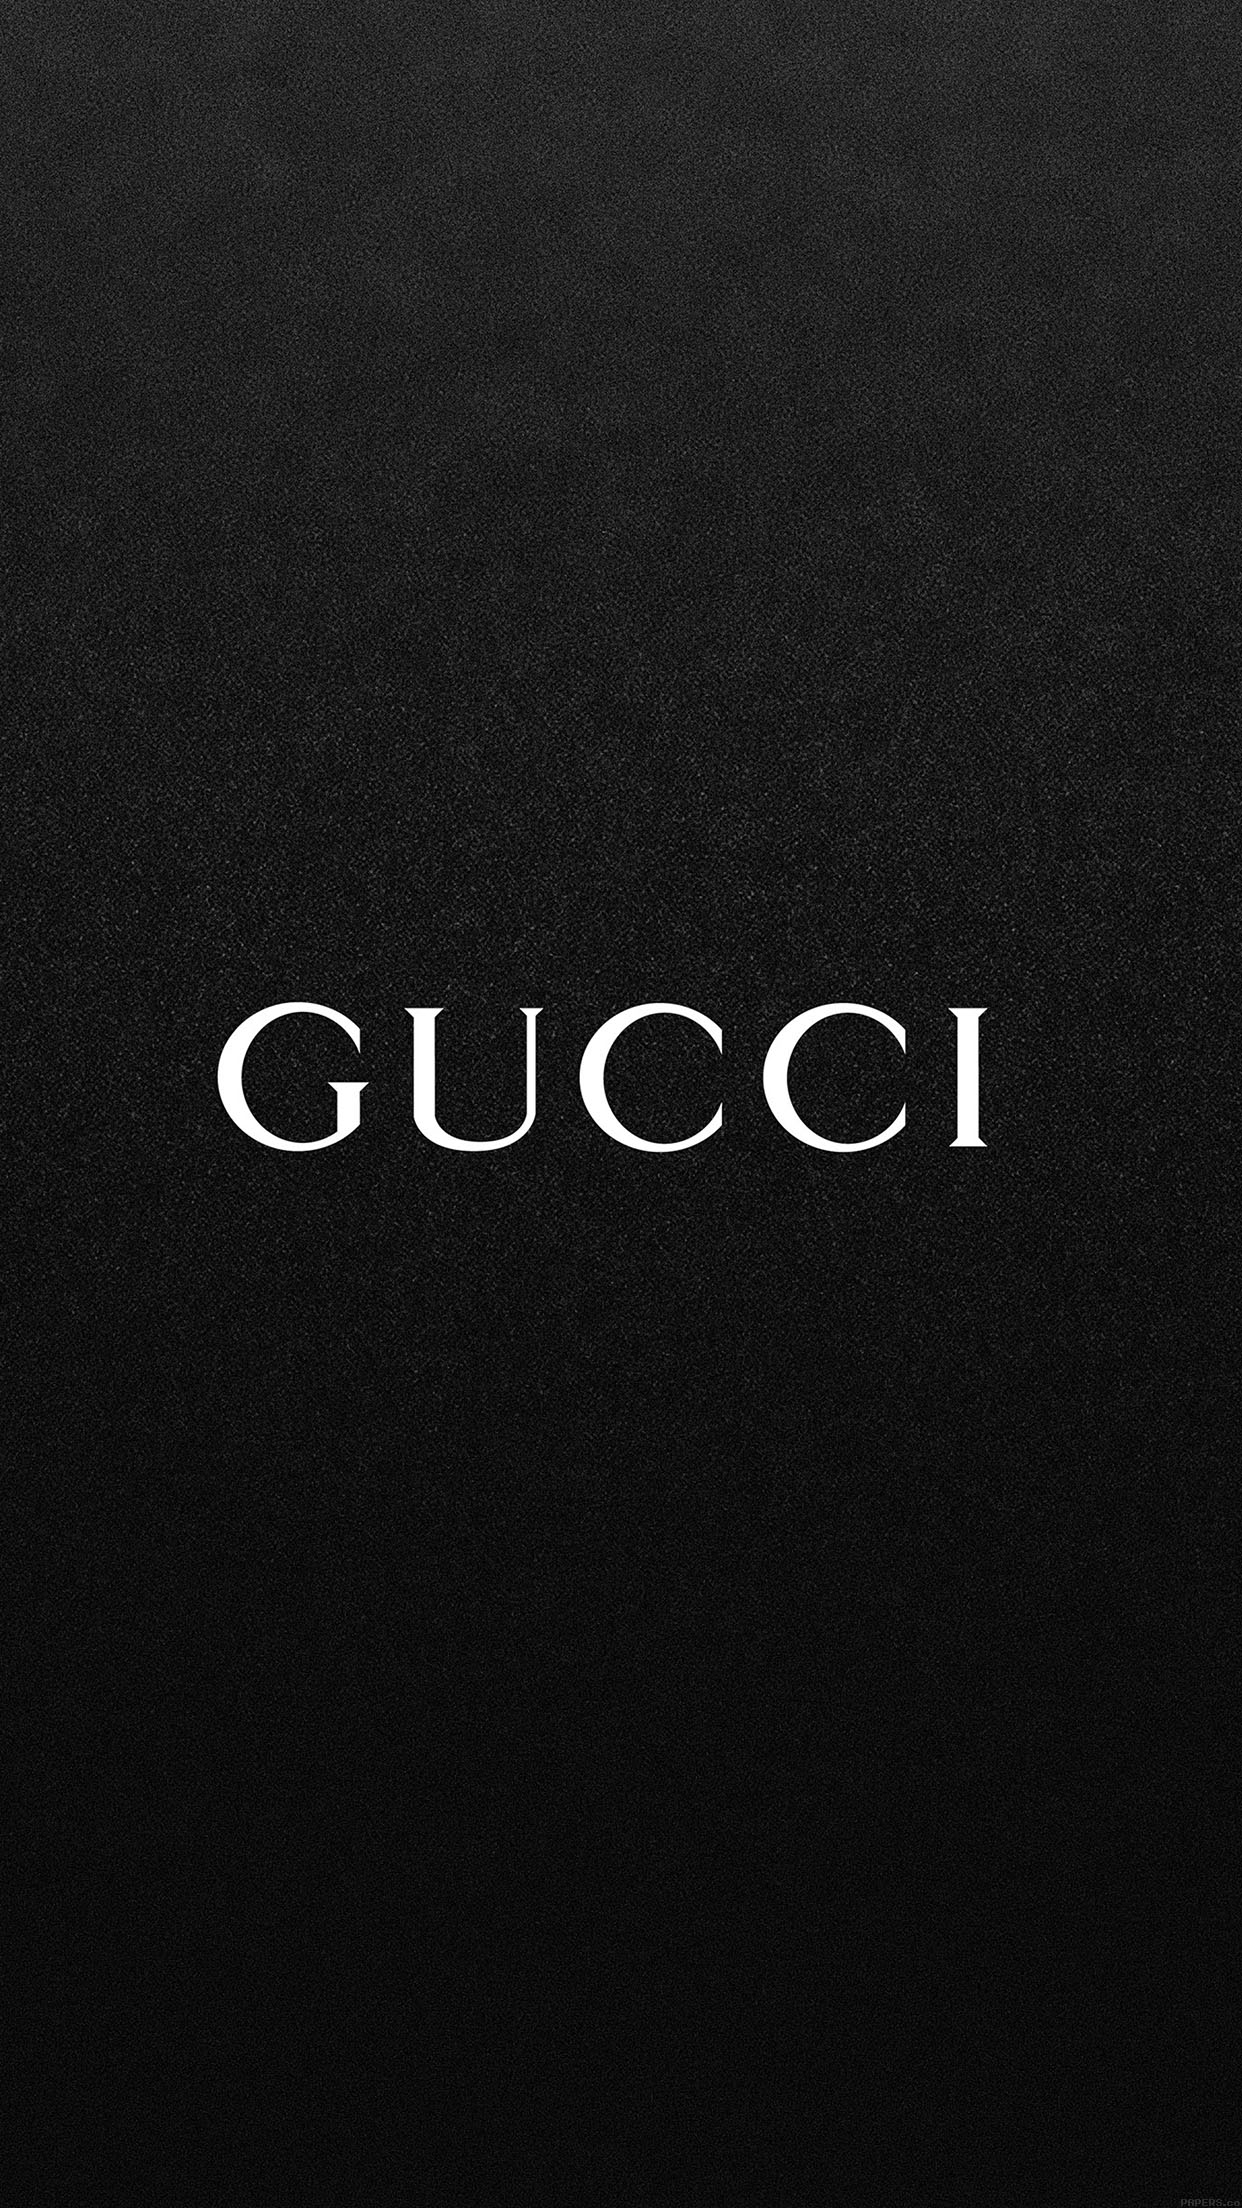 Hình nền đen Gucci tuyệt đẹp